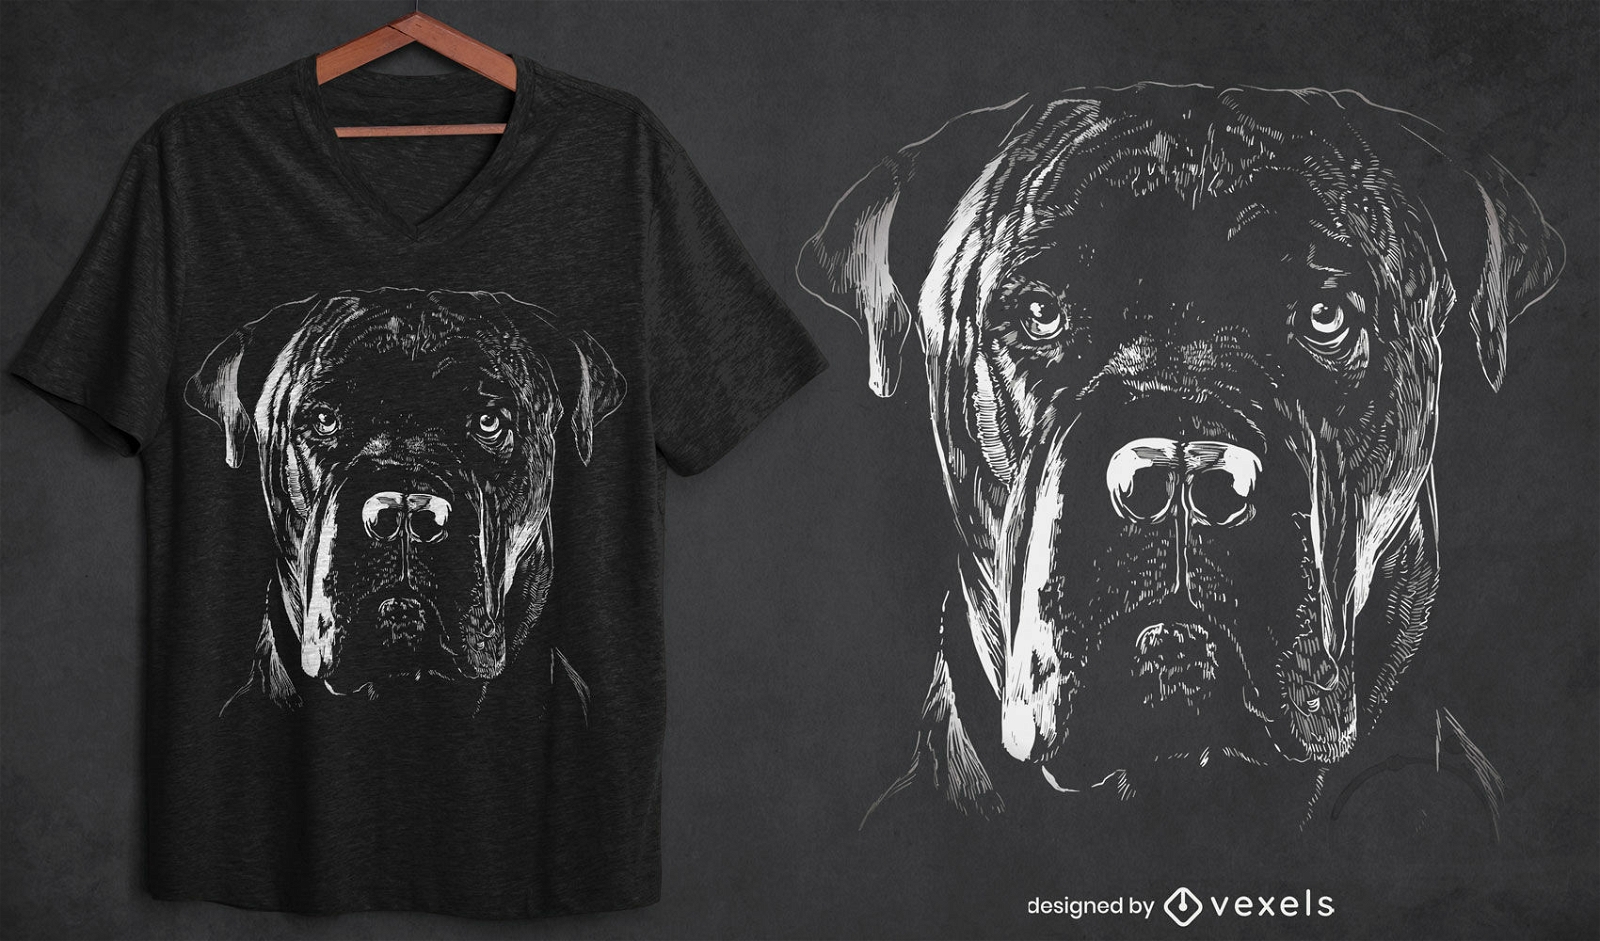 Cane corso dog t-shirt design